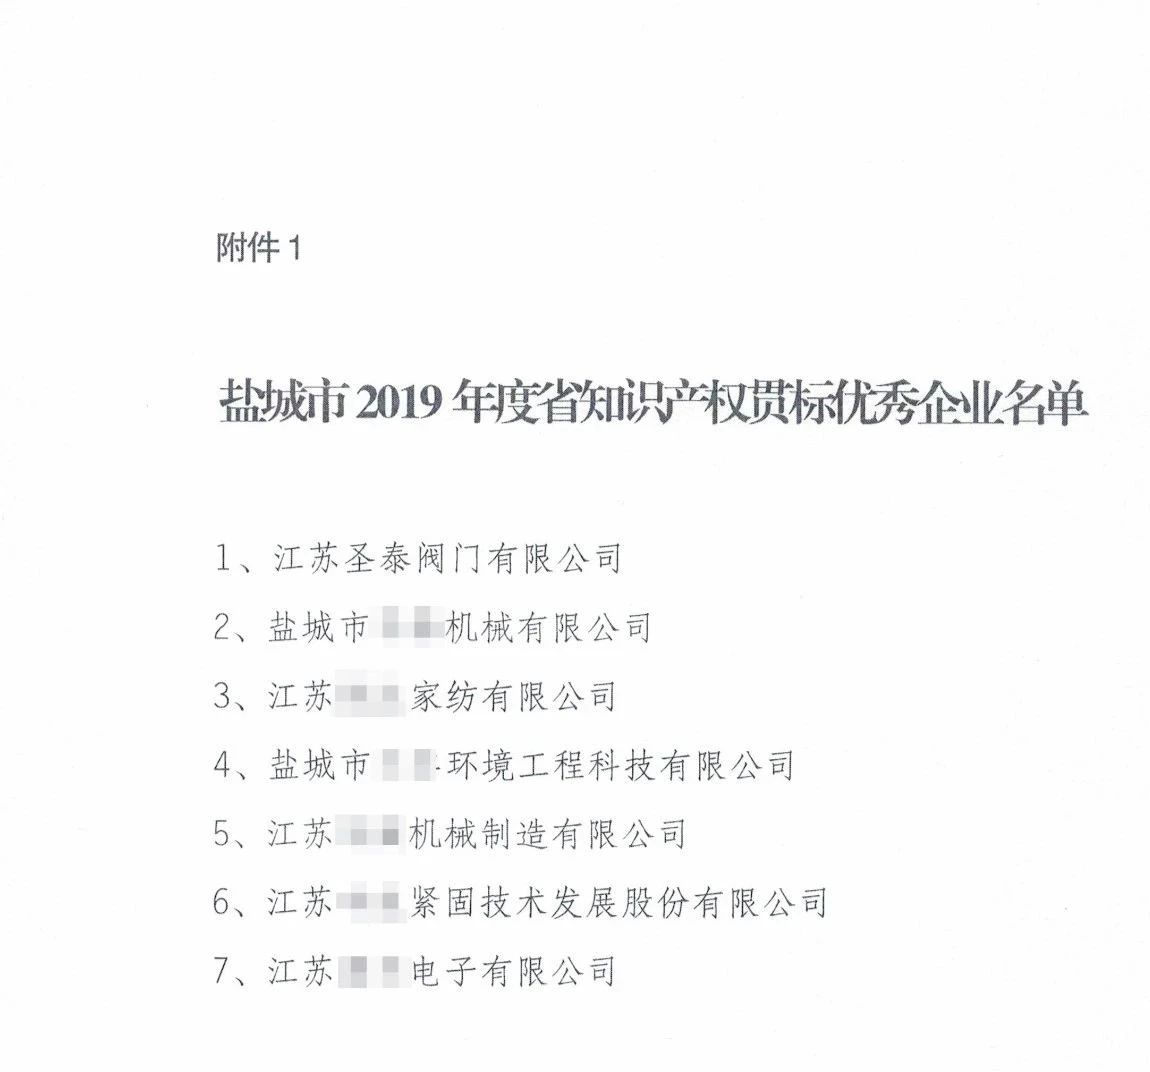 江苏圣泰阀门被评为“2019年省知识产权贯标优秀企业”